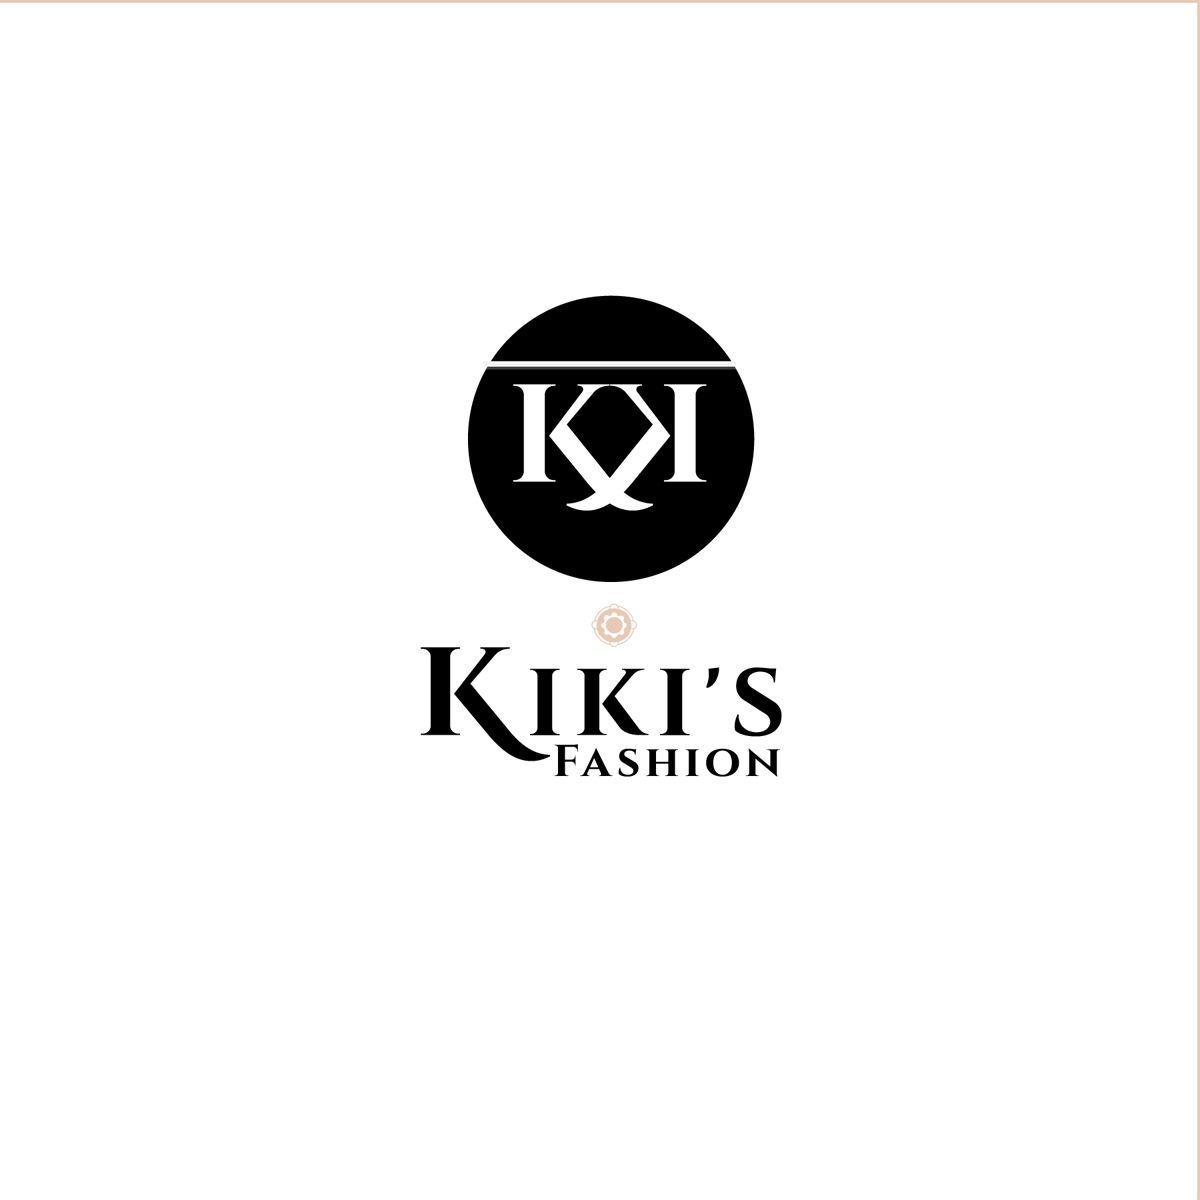 Kiki Logo - Fashion Logo Design for Kiki's Fashion by Venus L. Penaflor. Design